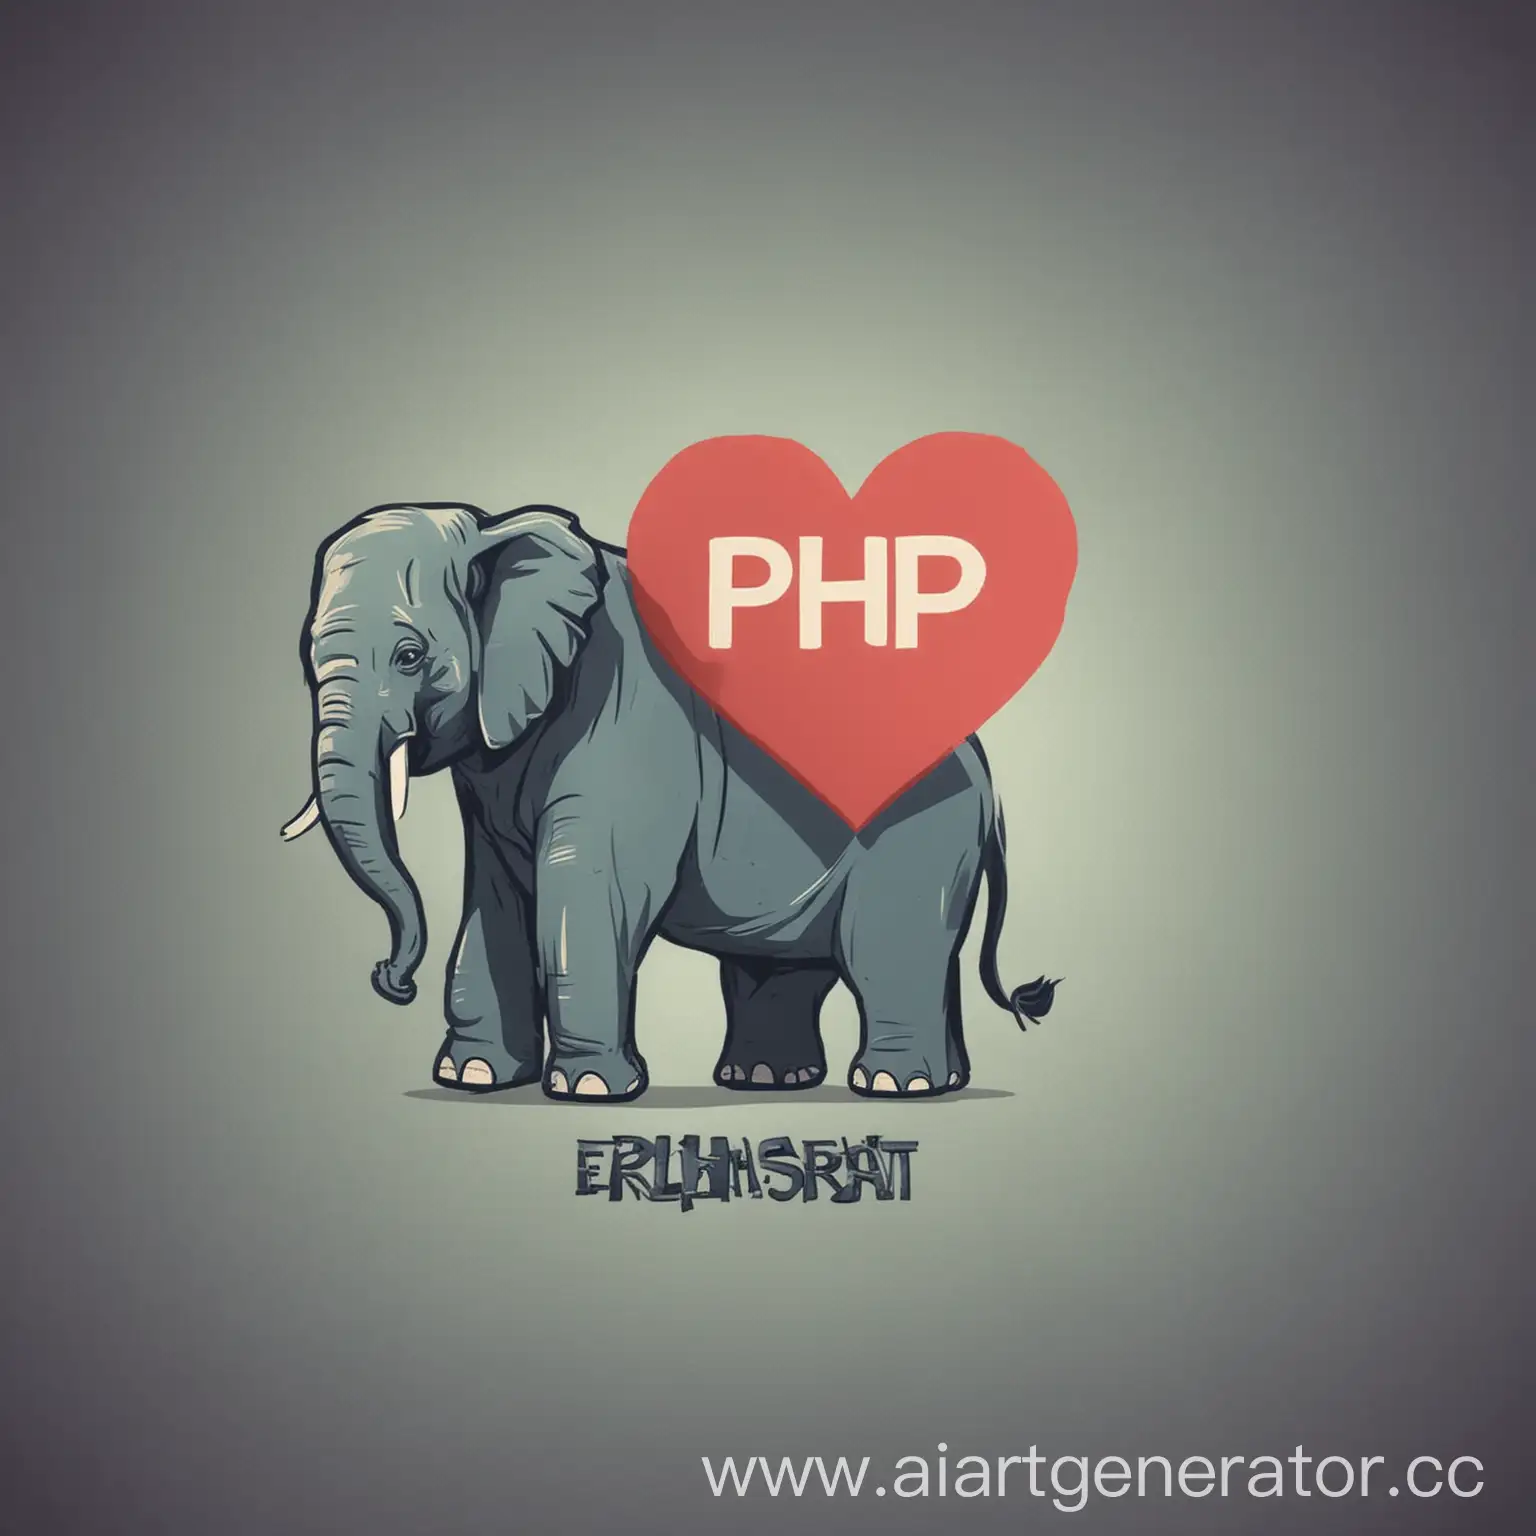 сделай картинку с php (это язык программирования символ которого слон) и postgresql (это база данных символ которого слон) = сердечка в сайфай стиле